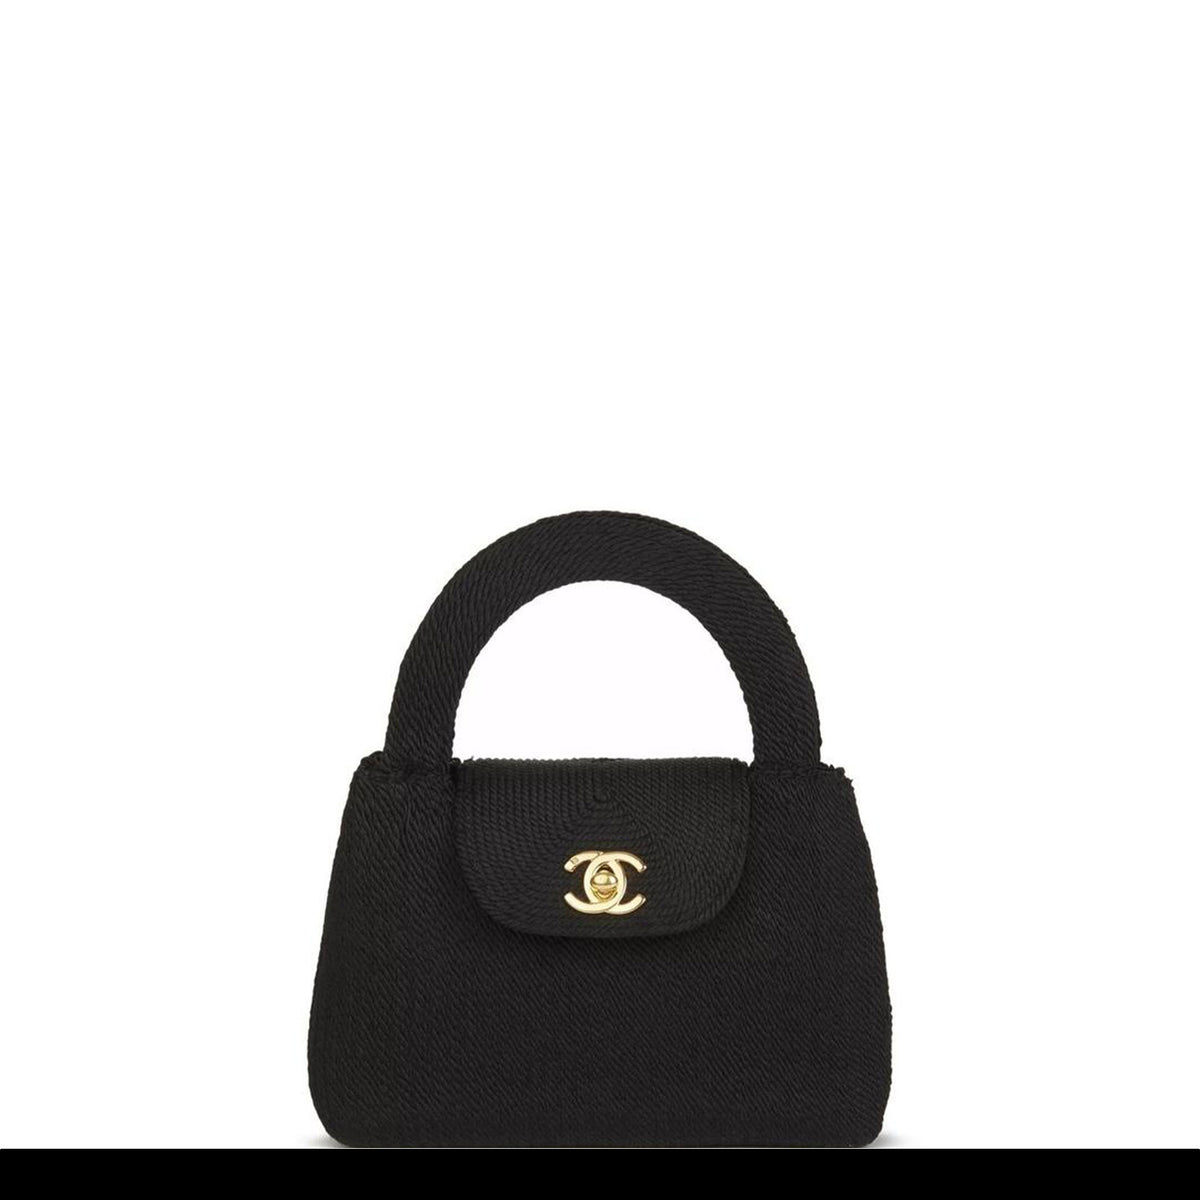 Chanel Black Classic Handbag - 827 For Sale on 1stDibs